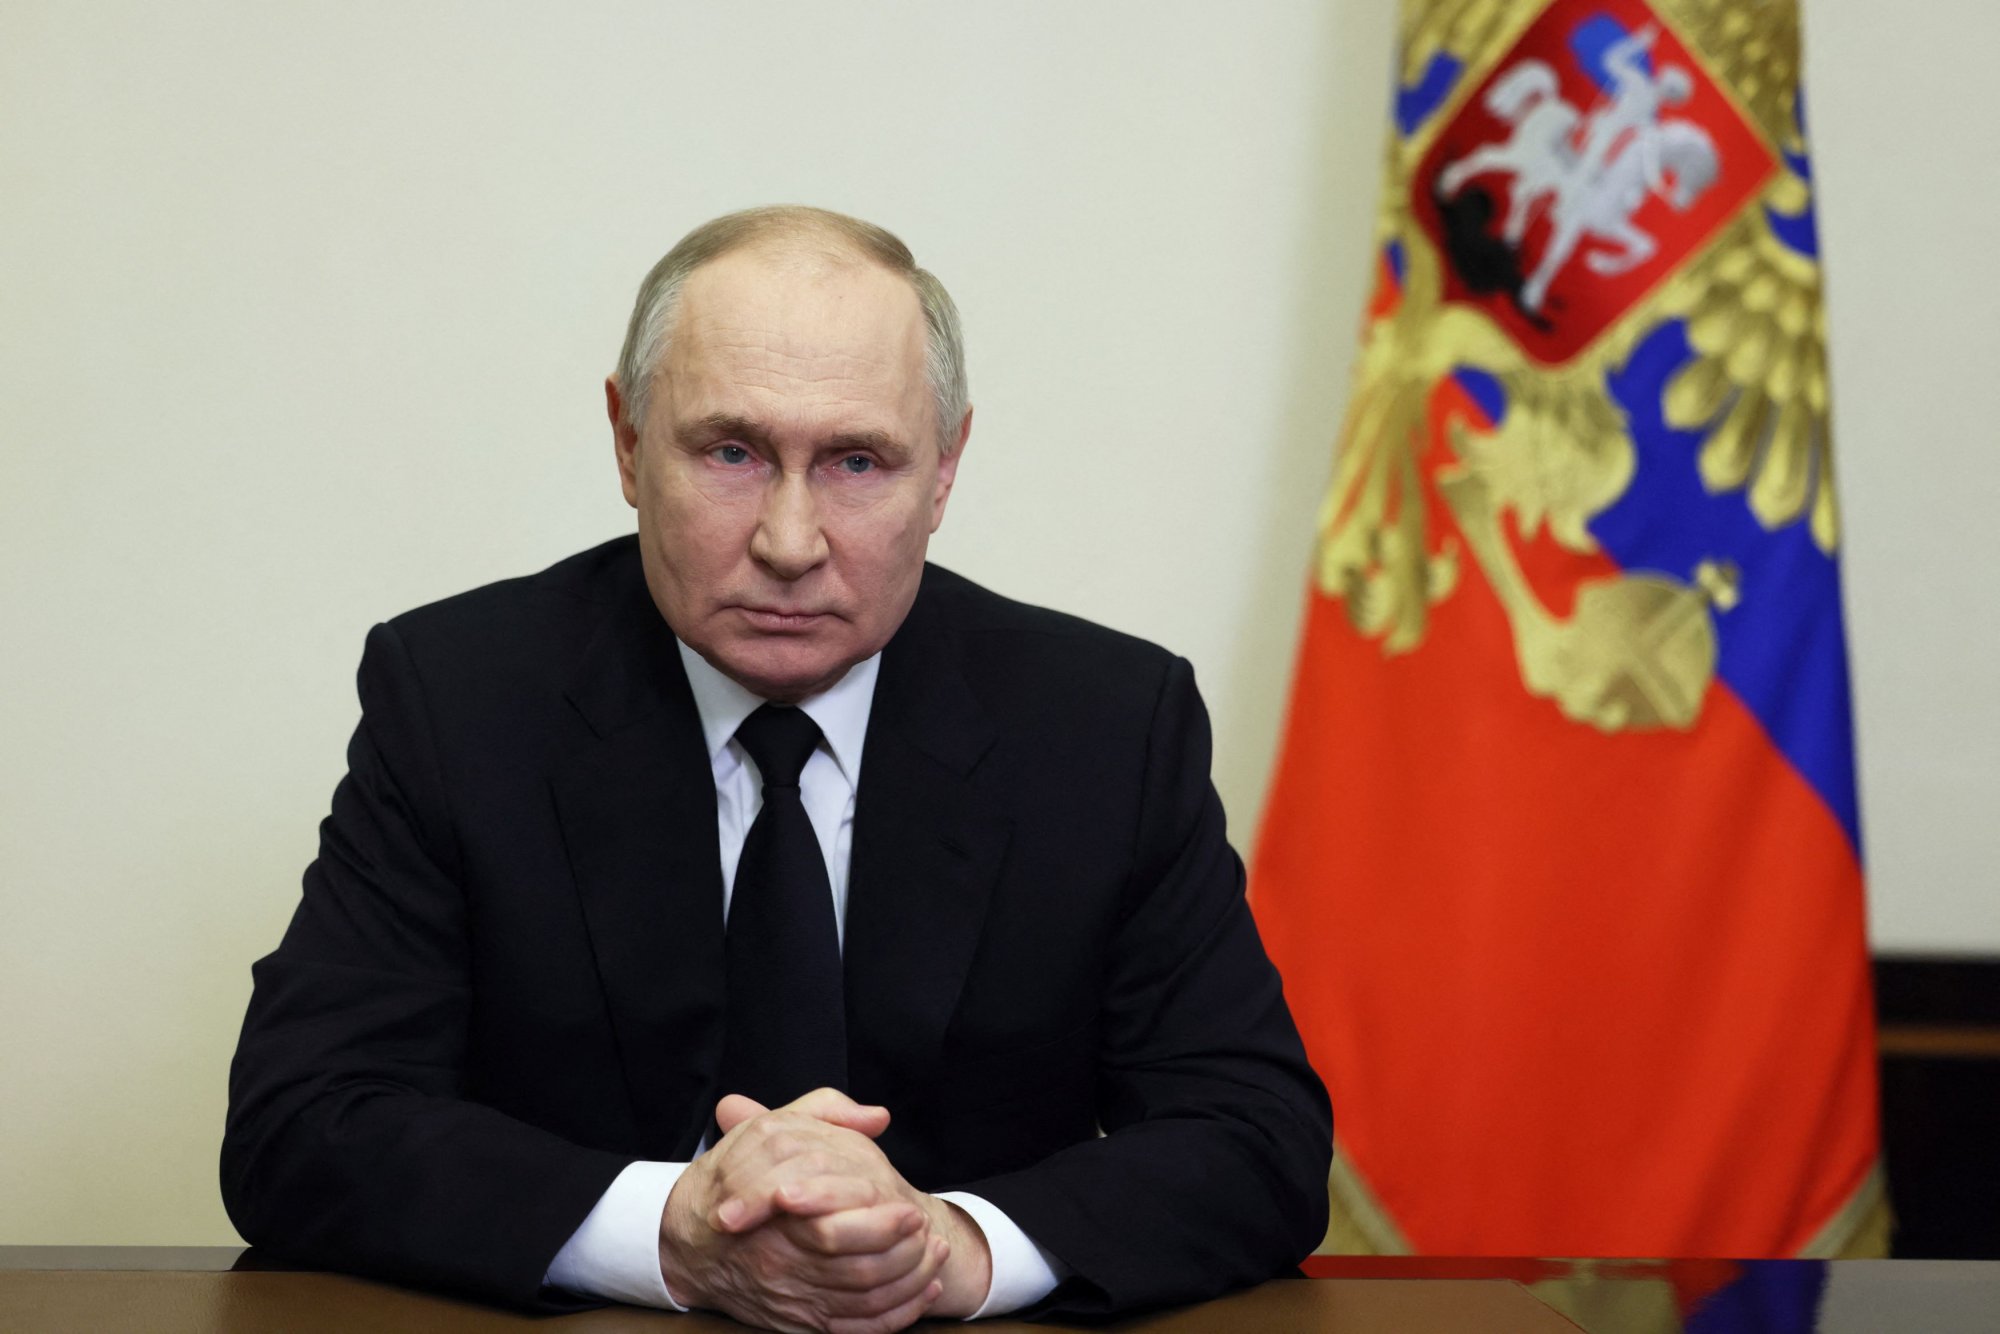 Μακελειό στη Μόσχα: Το ερώτημα που ψάχνει απάντηση - Ποια θα είναι η αντίδραση του Πούτιν;